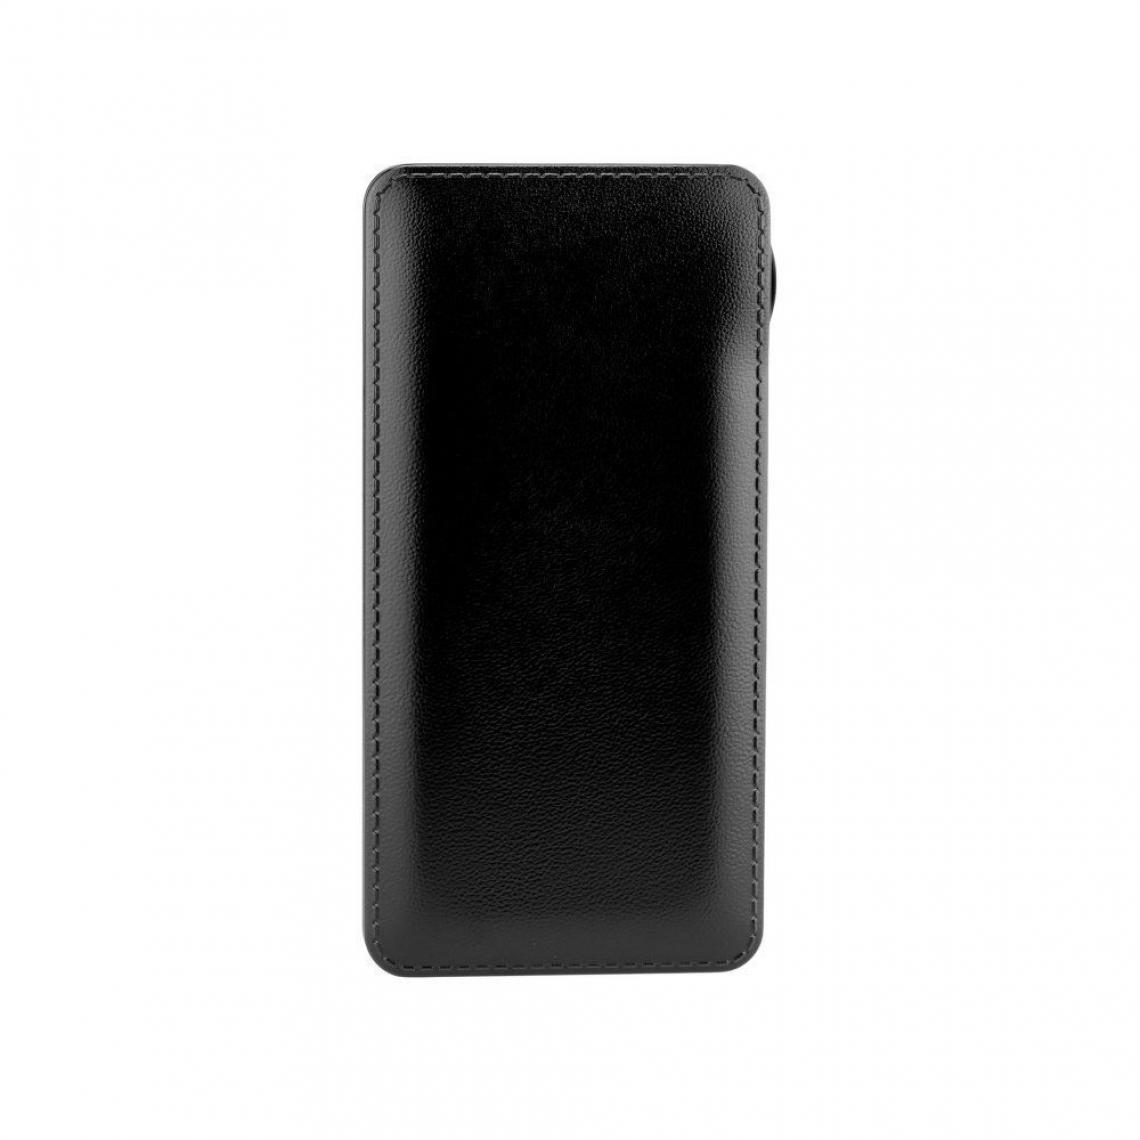 Ozzzo - Chargeur batterie externe 20000 mAh powerbank ozzzo noir pour SAMSUNG G388f Galaxy Xcover 3 - Autres accessoires smartphone